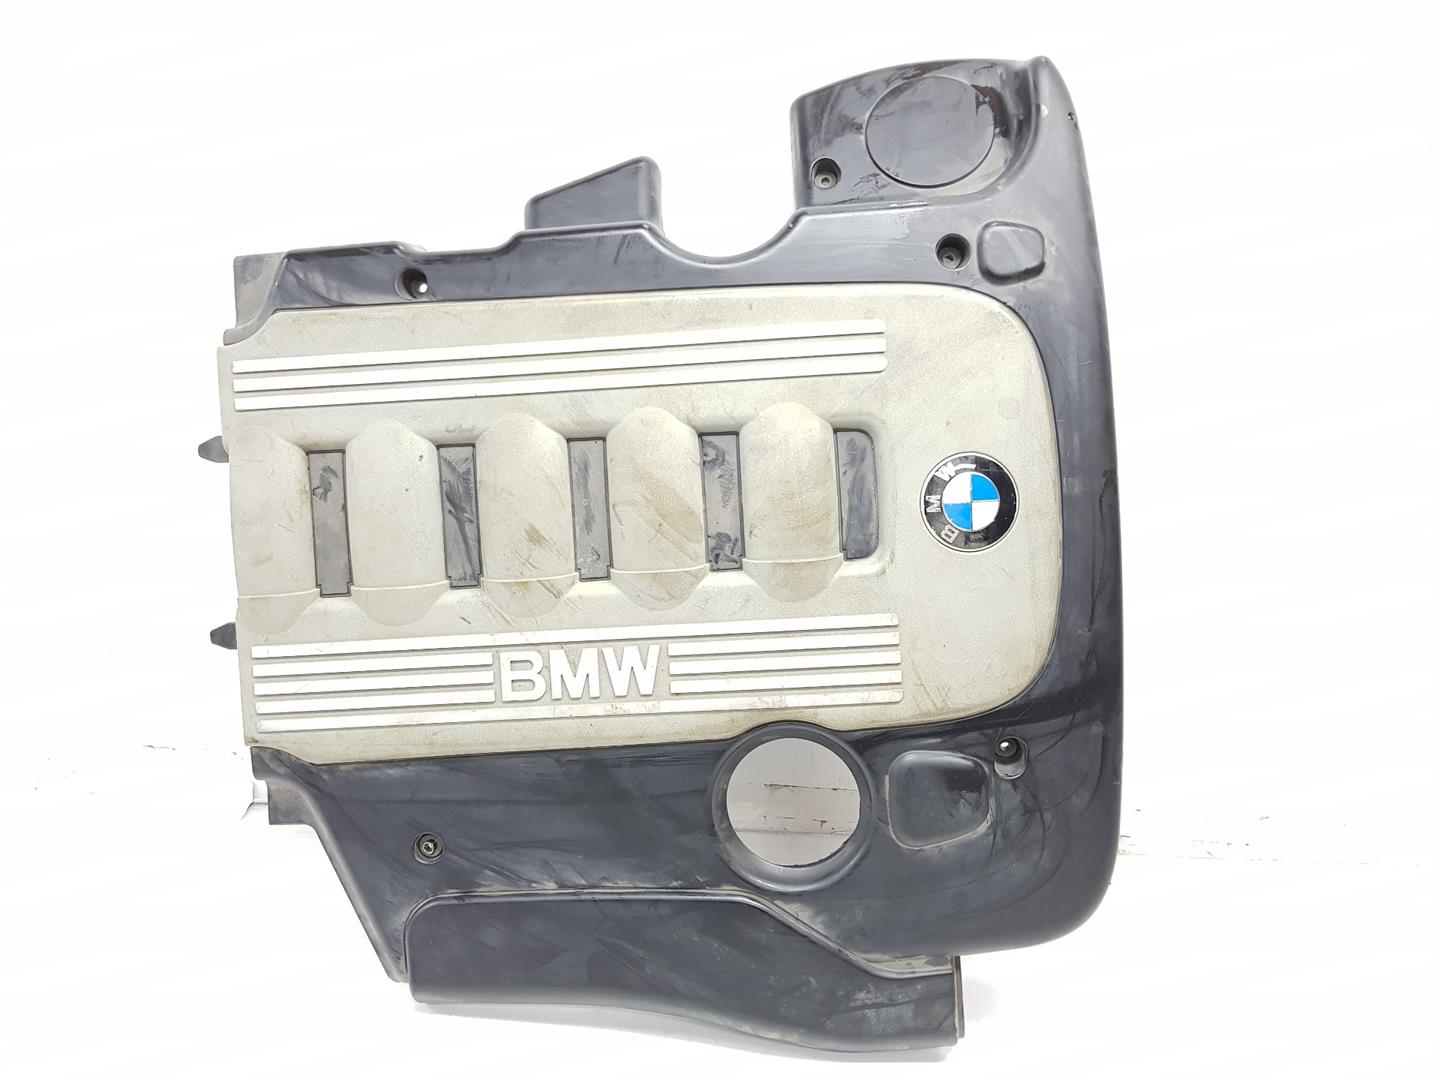 BMW X6 E71/E72 (2008-2012) Engine Cover 11147788915, 11147807240 23826542